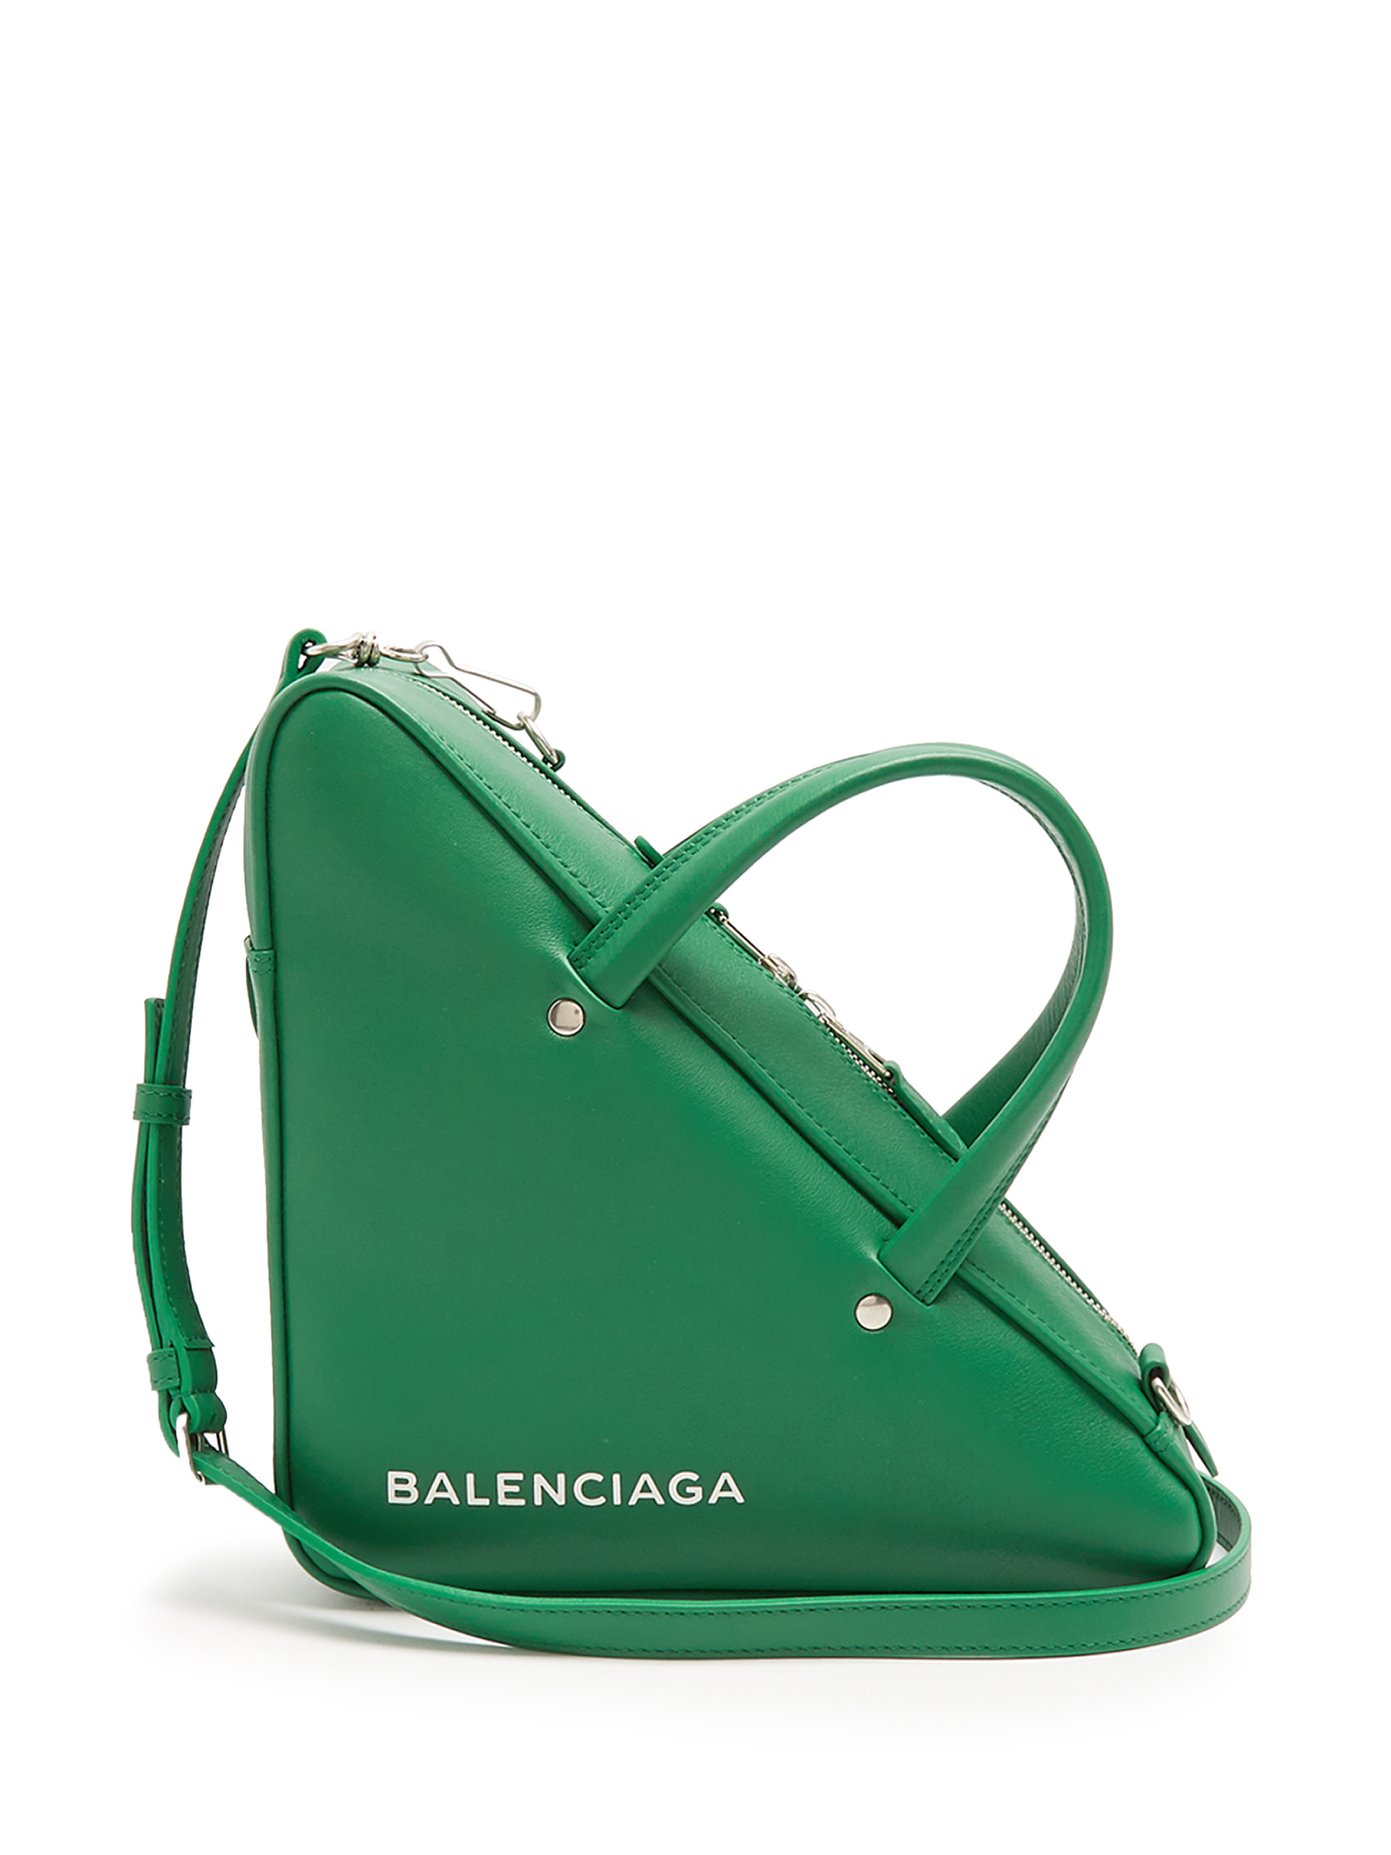 balenciaga triangle bag green